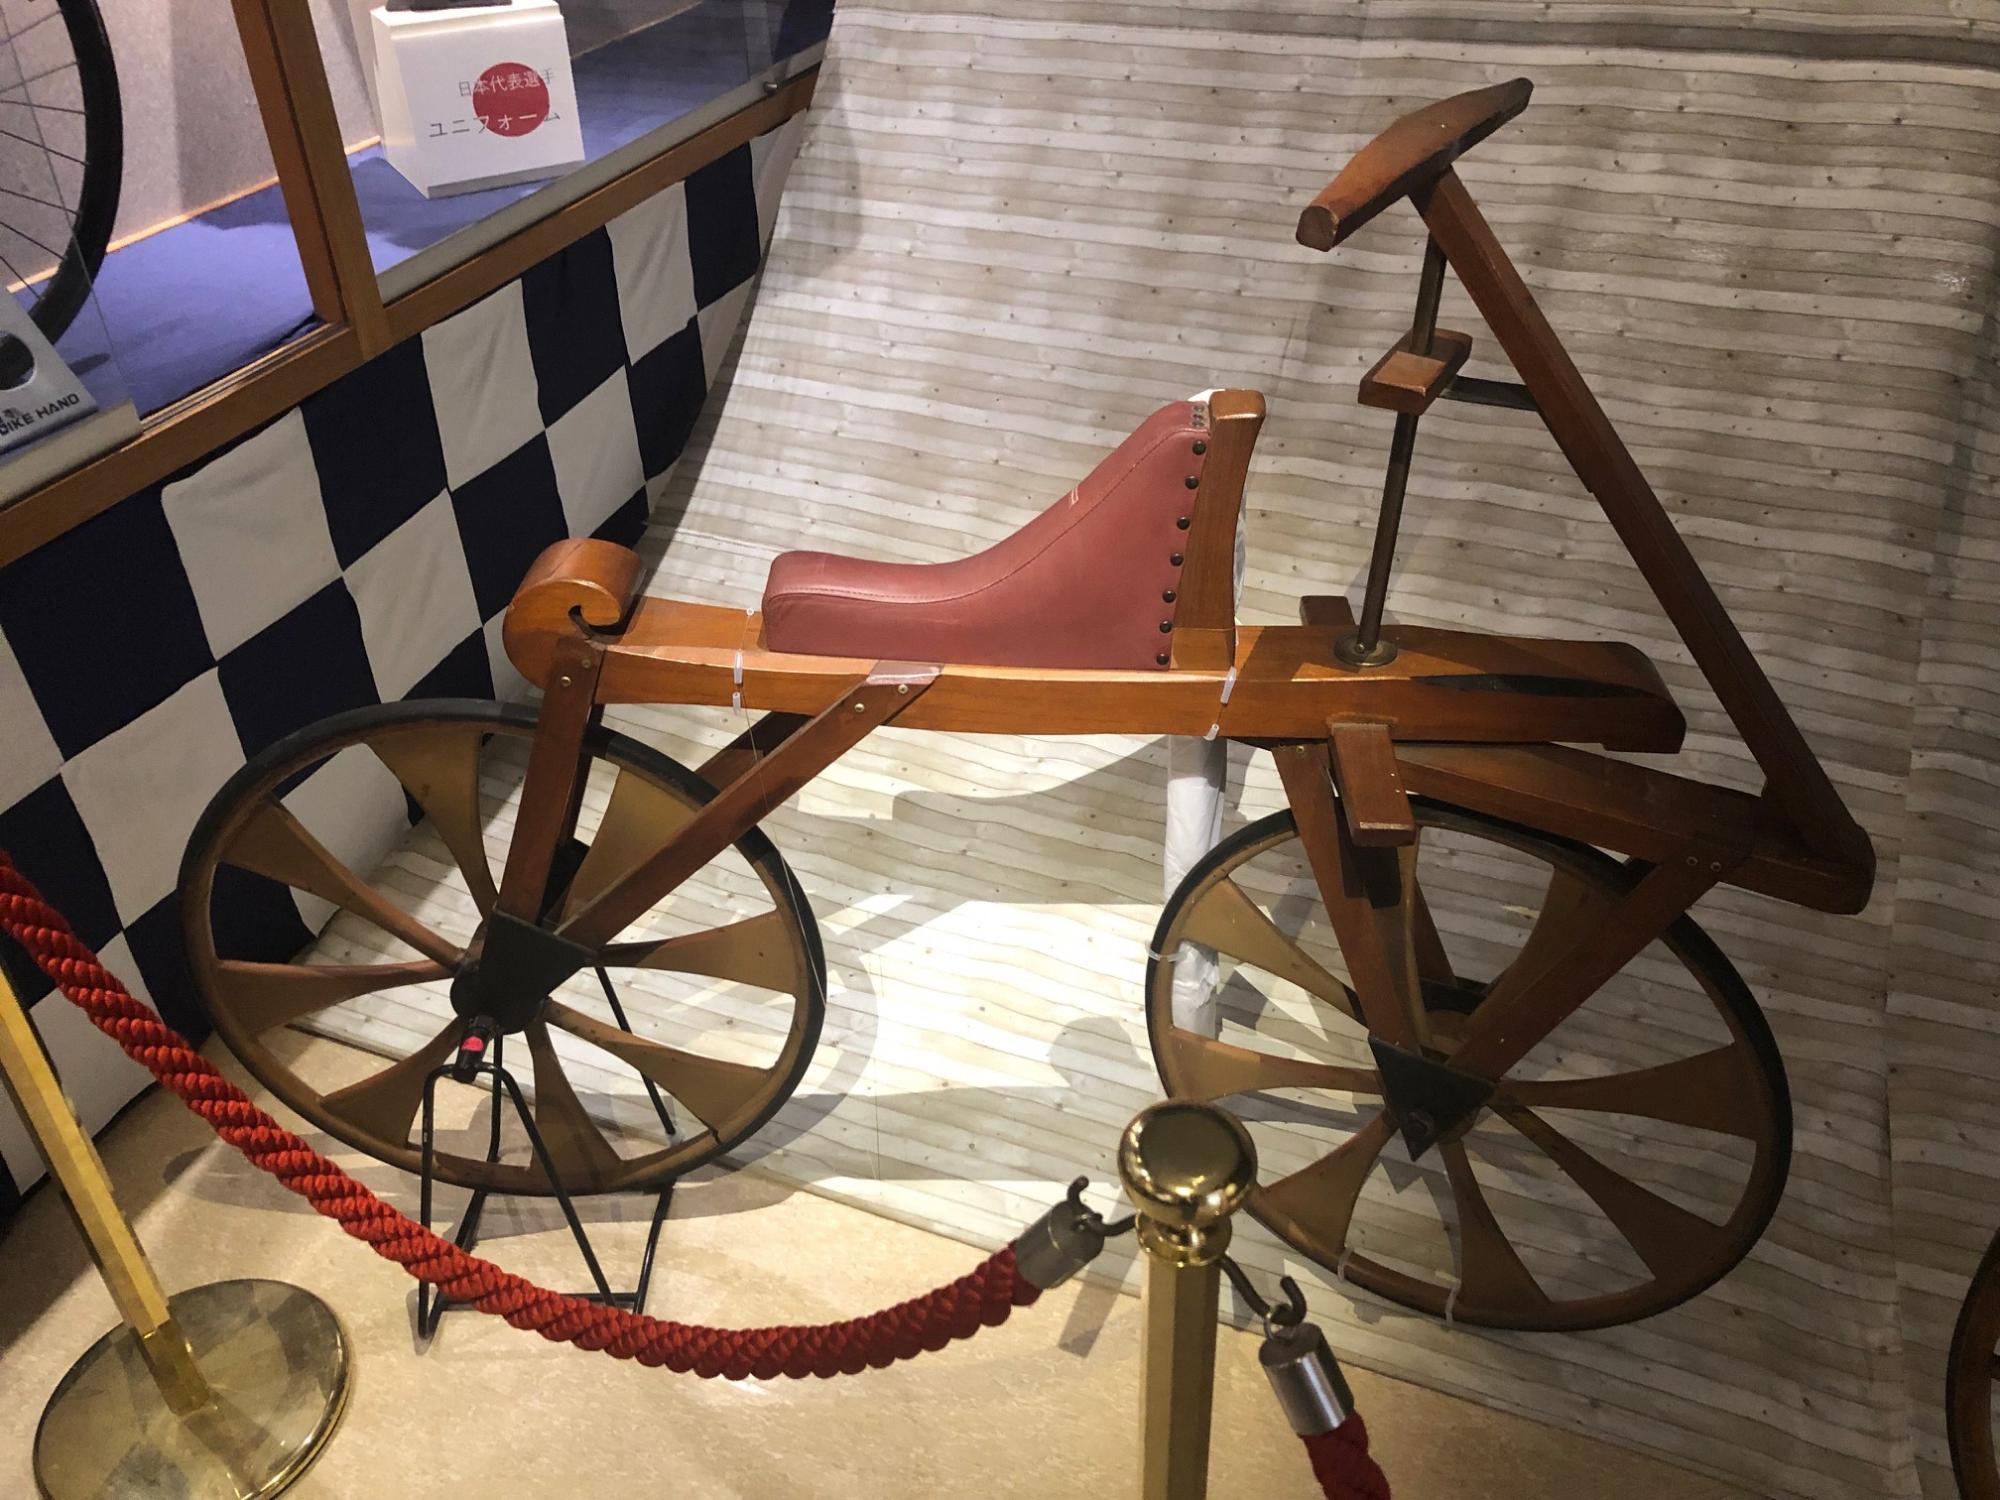 木製の世界最古の自転車「ドライジーネ」が展示されている写真